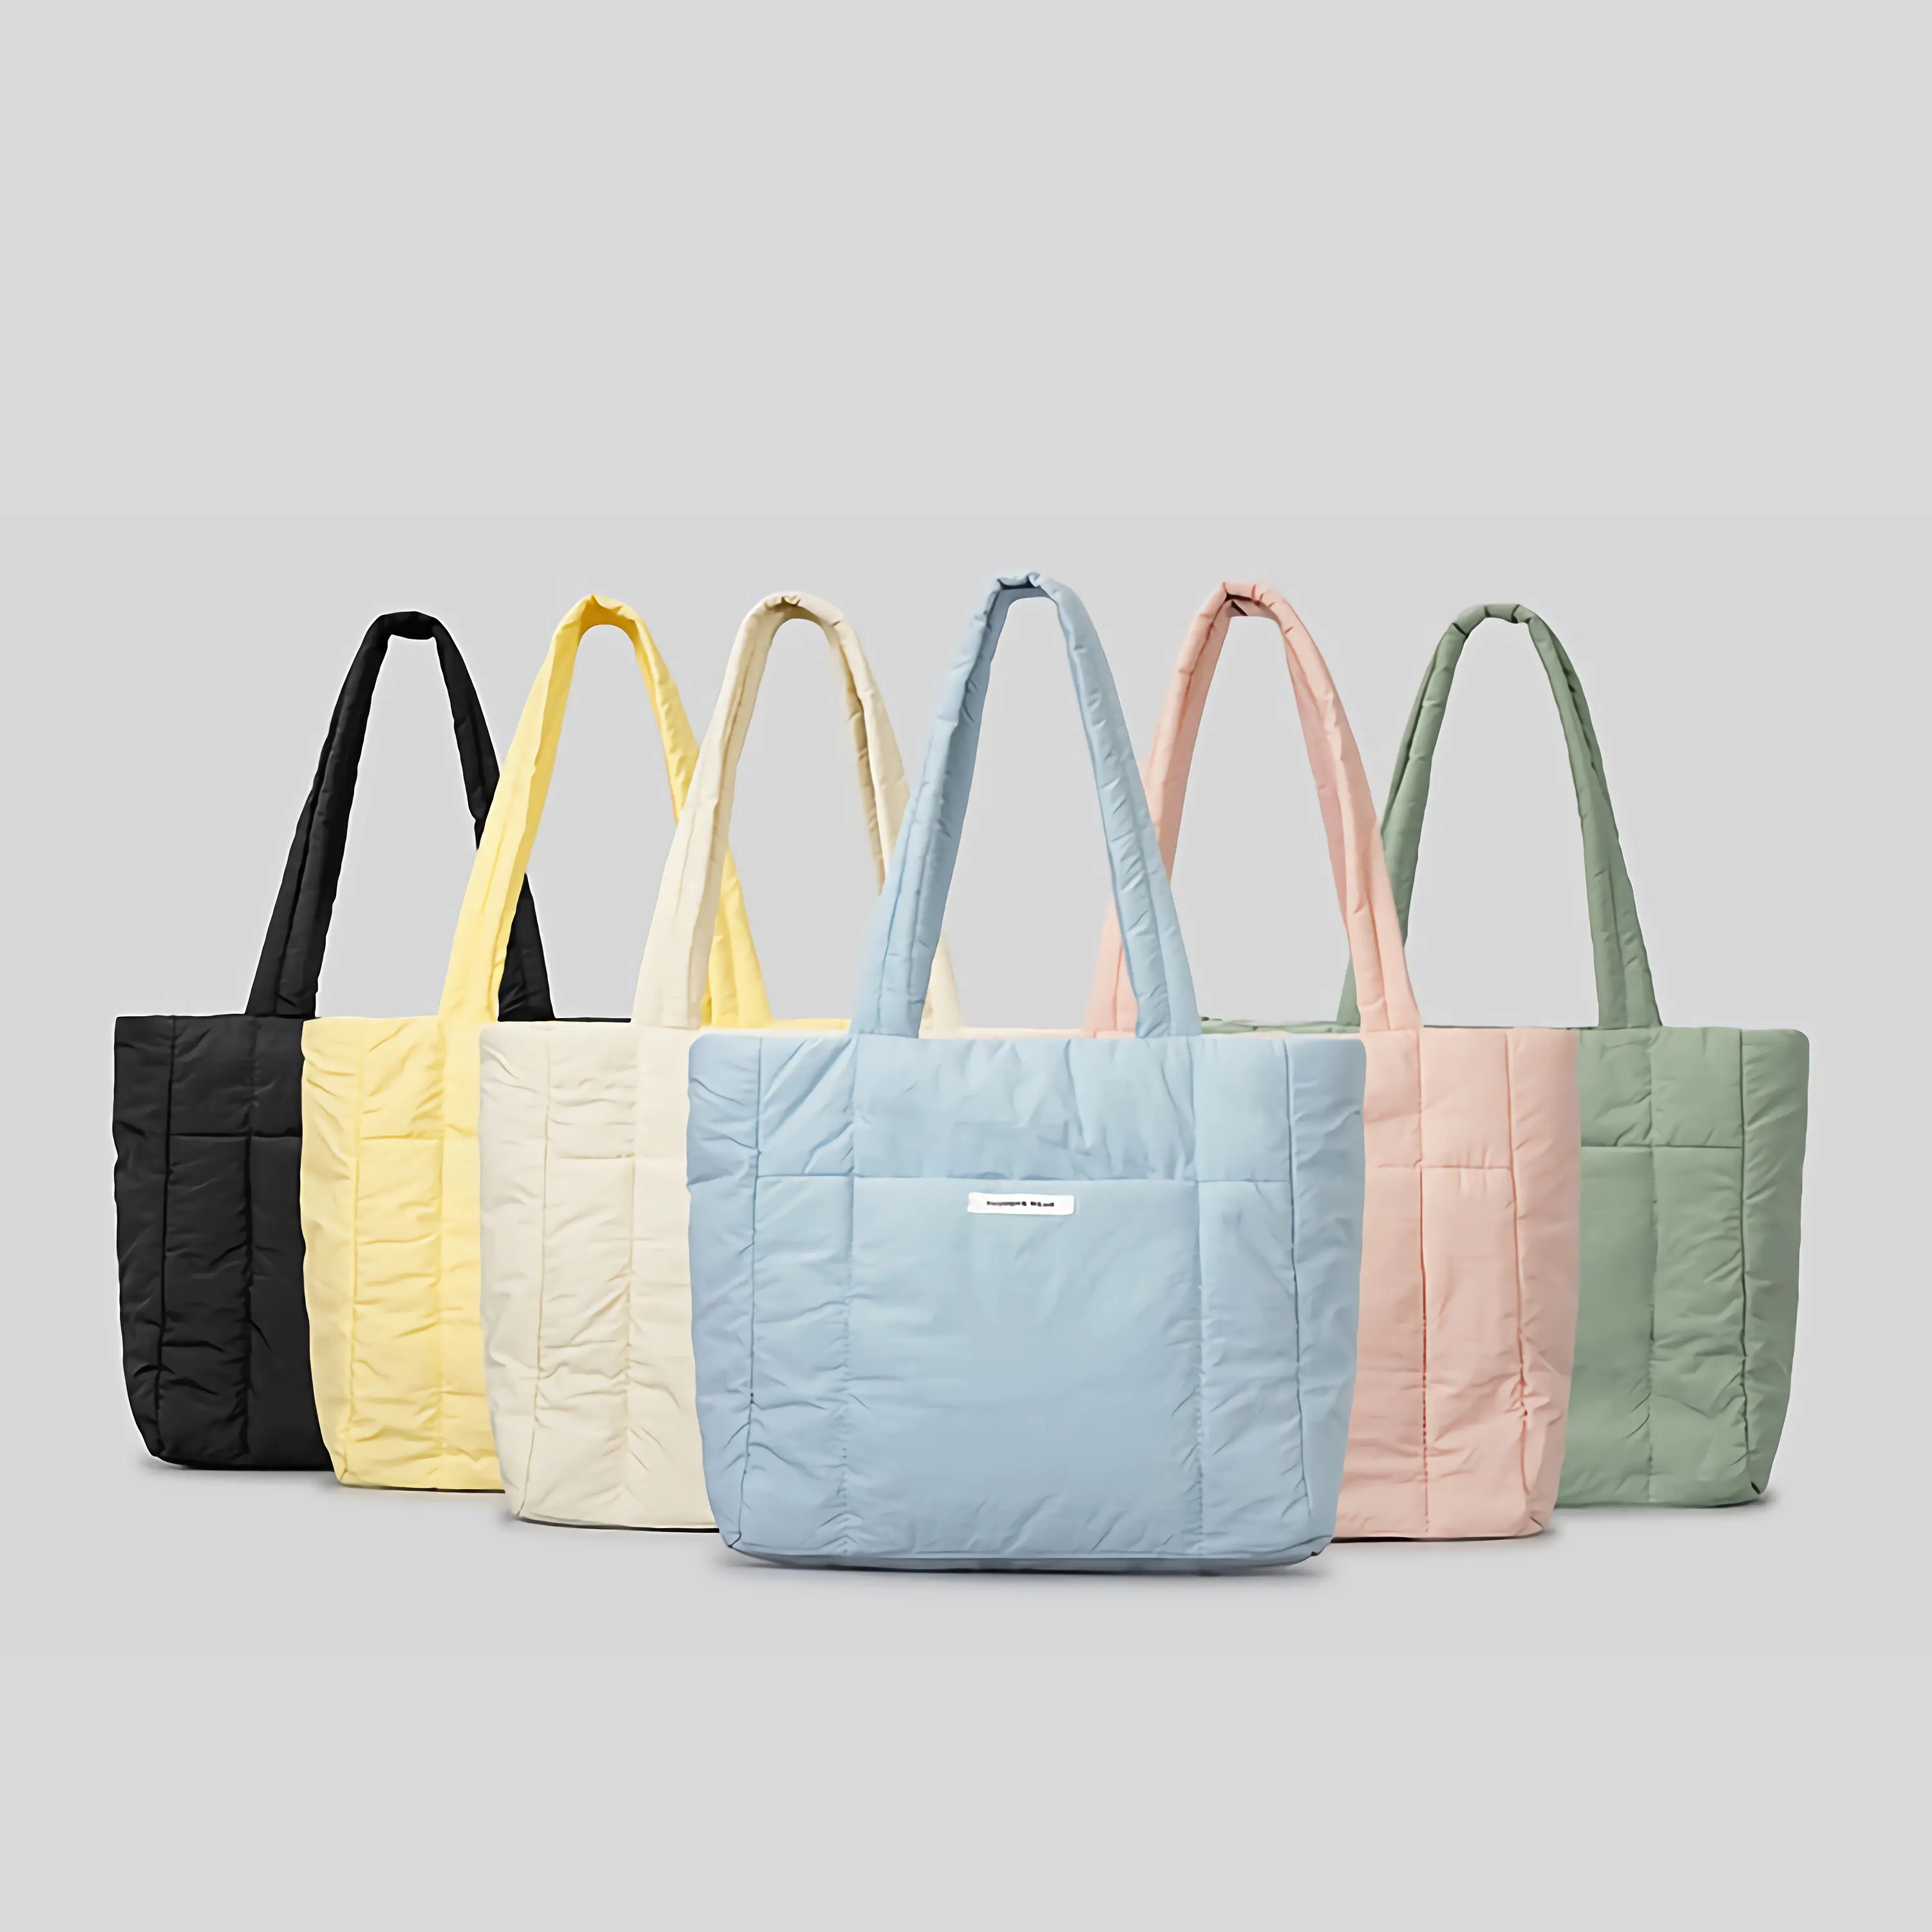 Vente en gros de mode sac à aisselles gonflées en nylon sac fourre-tout à bandoulière léger résistant à l'eau de couleur unie personnalisé pour les femmes